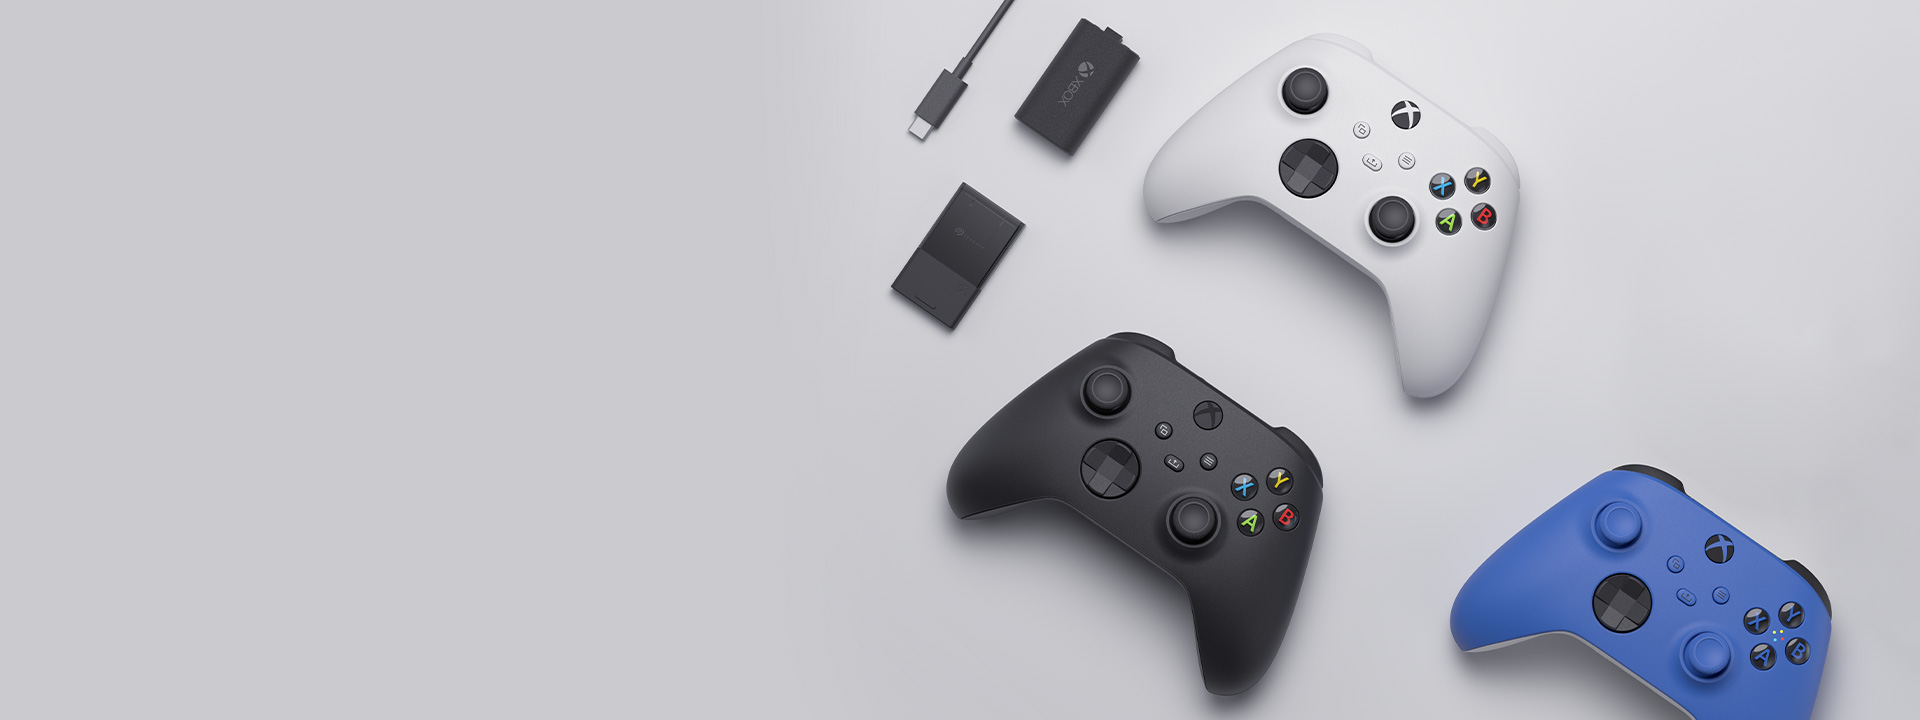 Différents accessoires Xbox incluant la manette sans fil Xbox, la trousse de chargement Play and charge et la carte d’extension de stockage Seagate pour Xbox Series X|S disposés les uns à côté de l’autre.